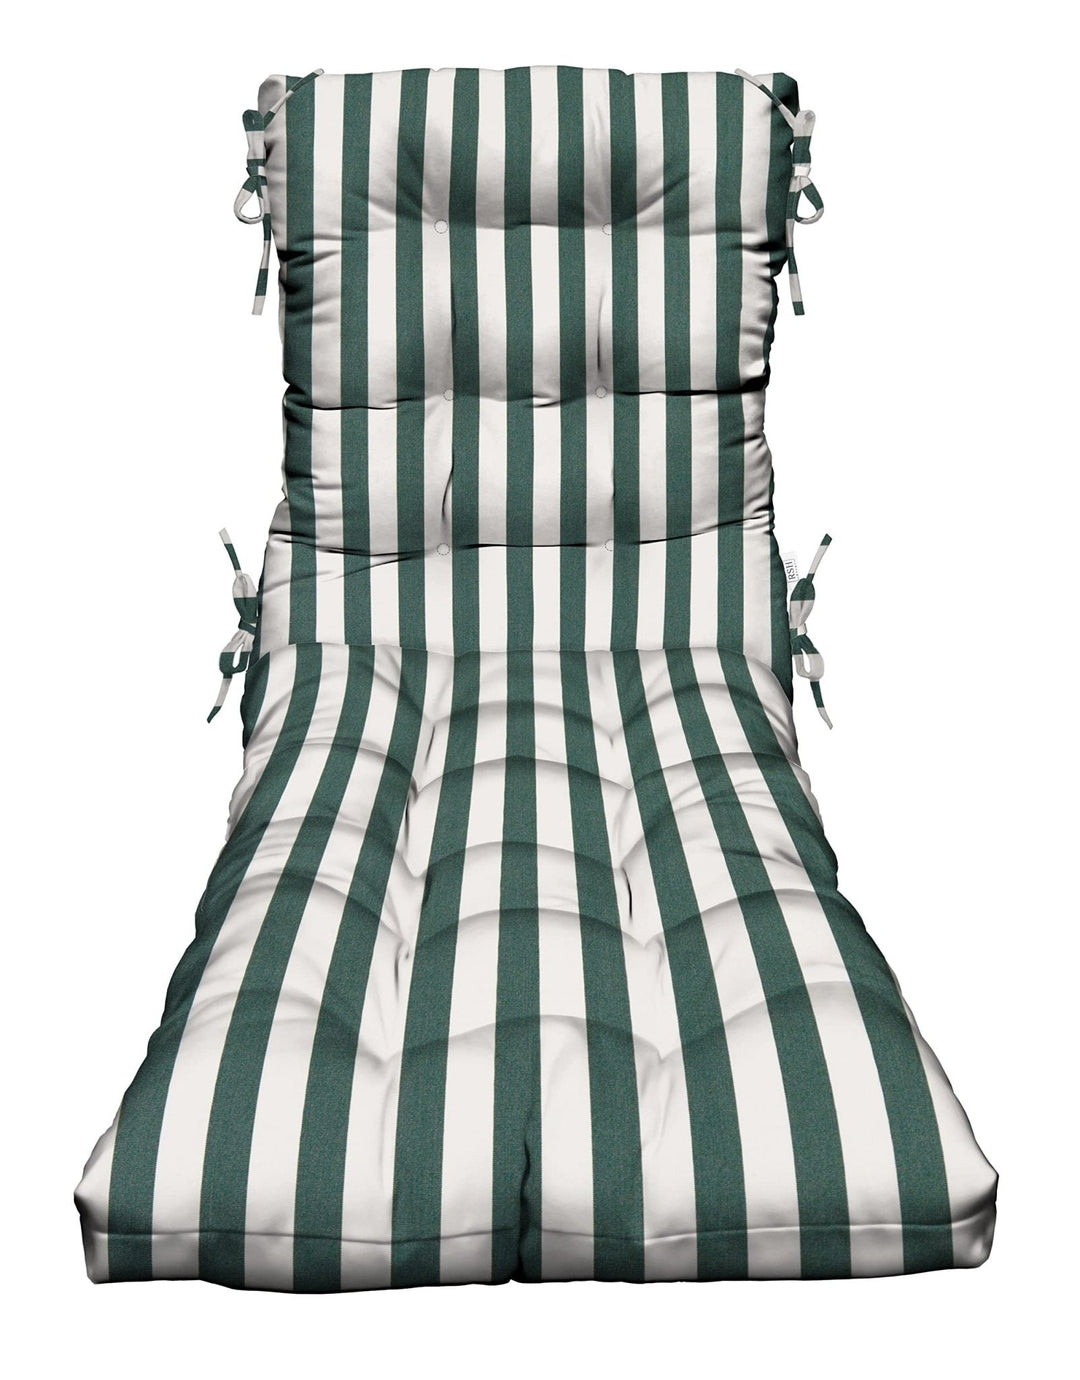 Chaise Lounge Chair Cushion | Tufted | 72" H x 22" W | Sunbrella Mason Forest Green - RSH Decor